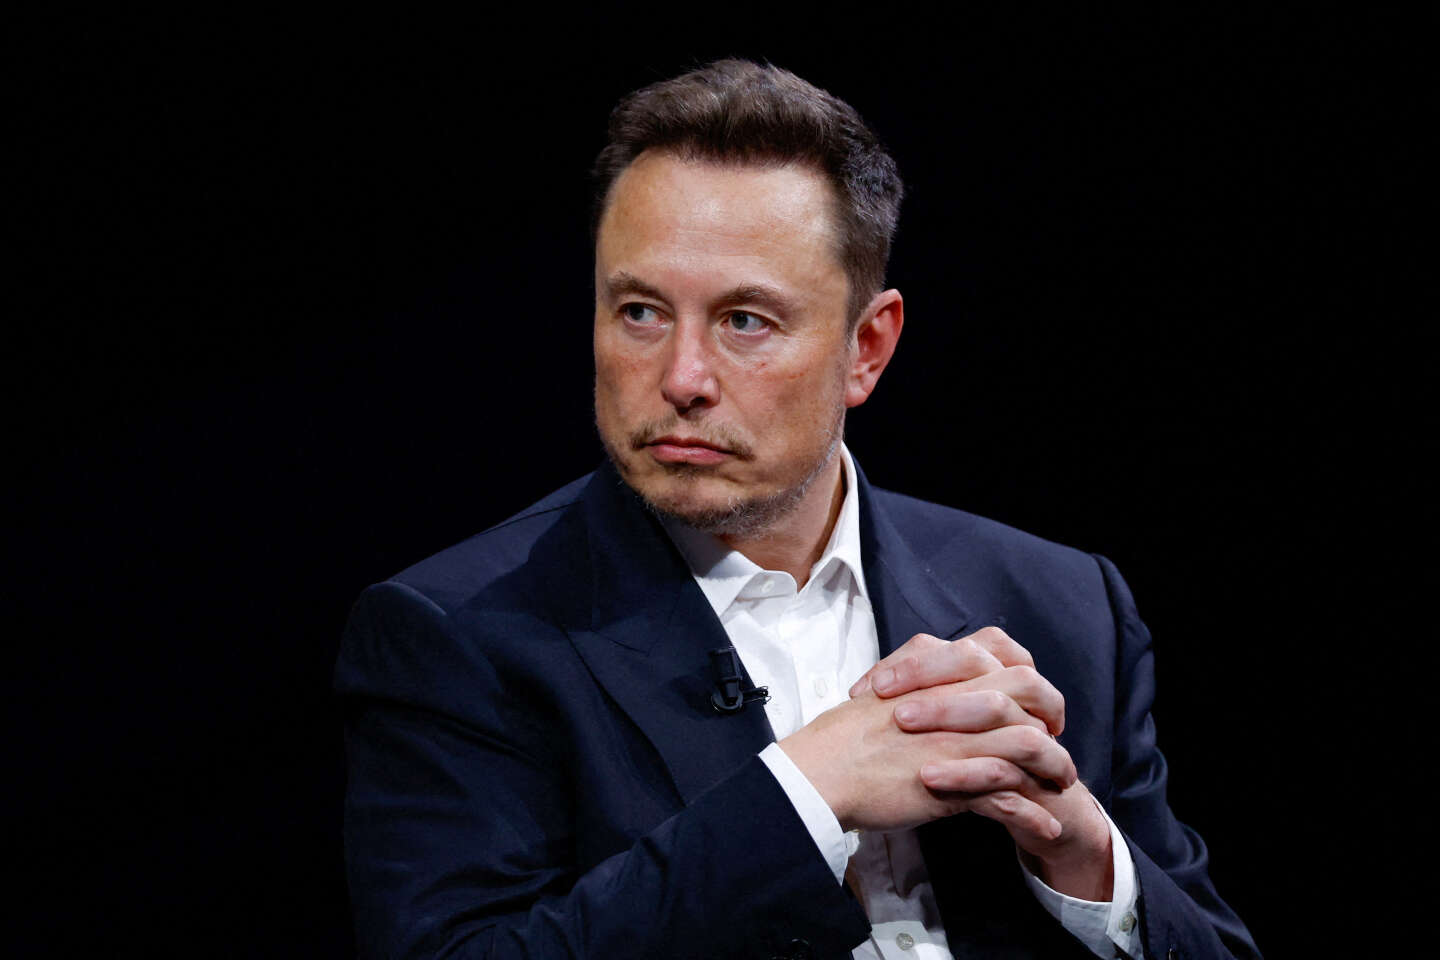 Polémique sur X : Elon Musk sous le feu d'accusations antisémites